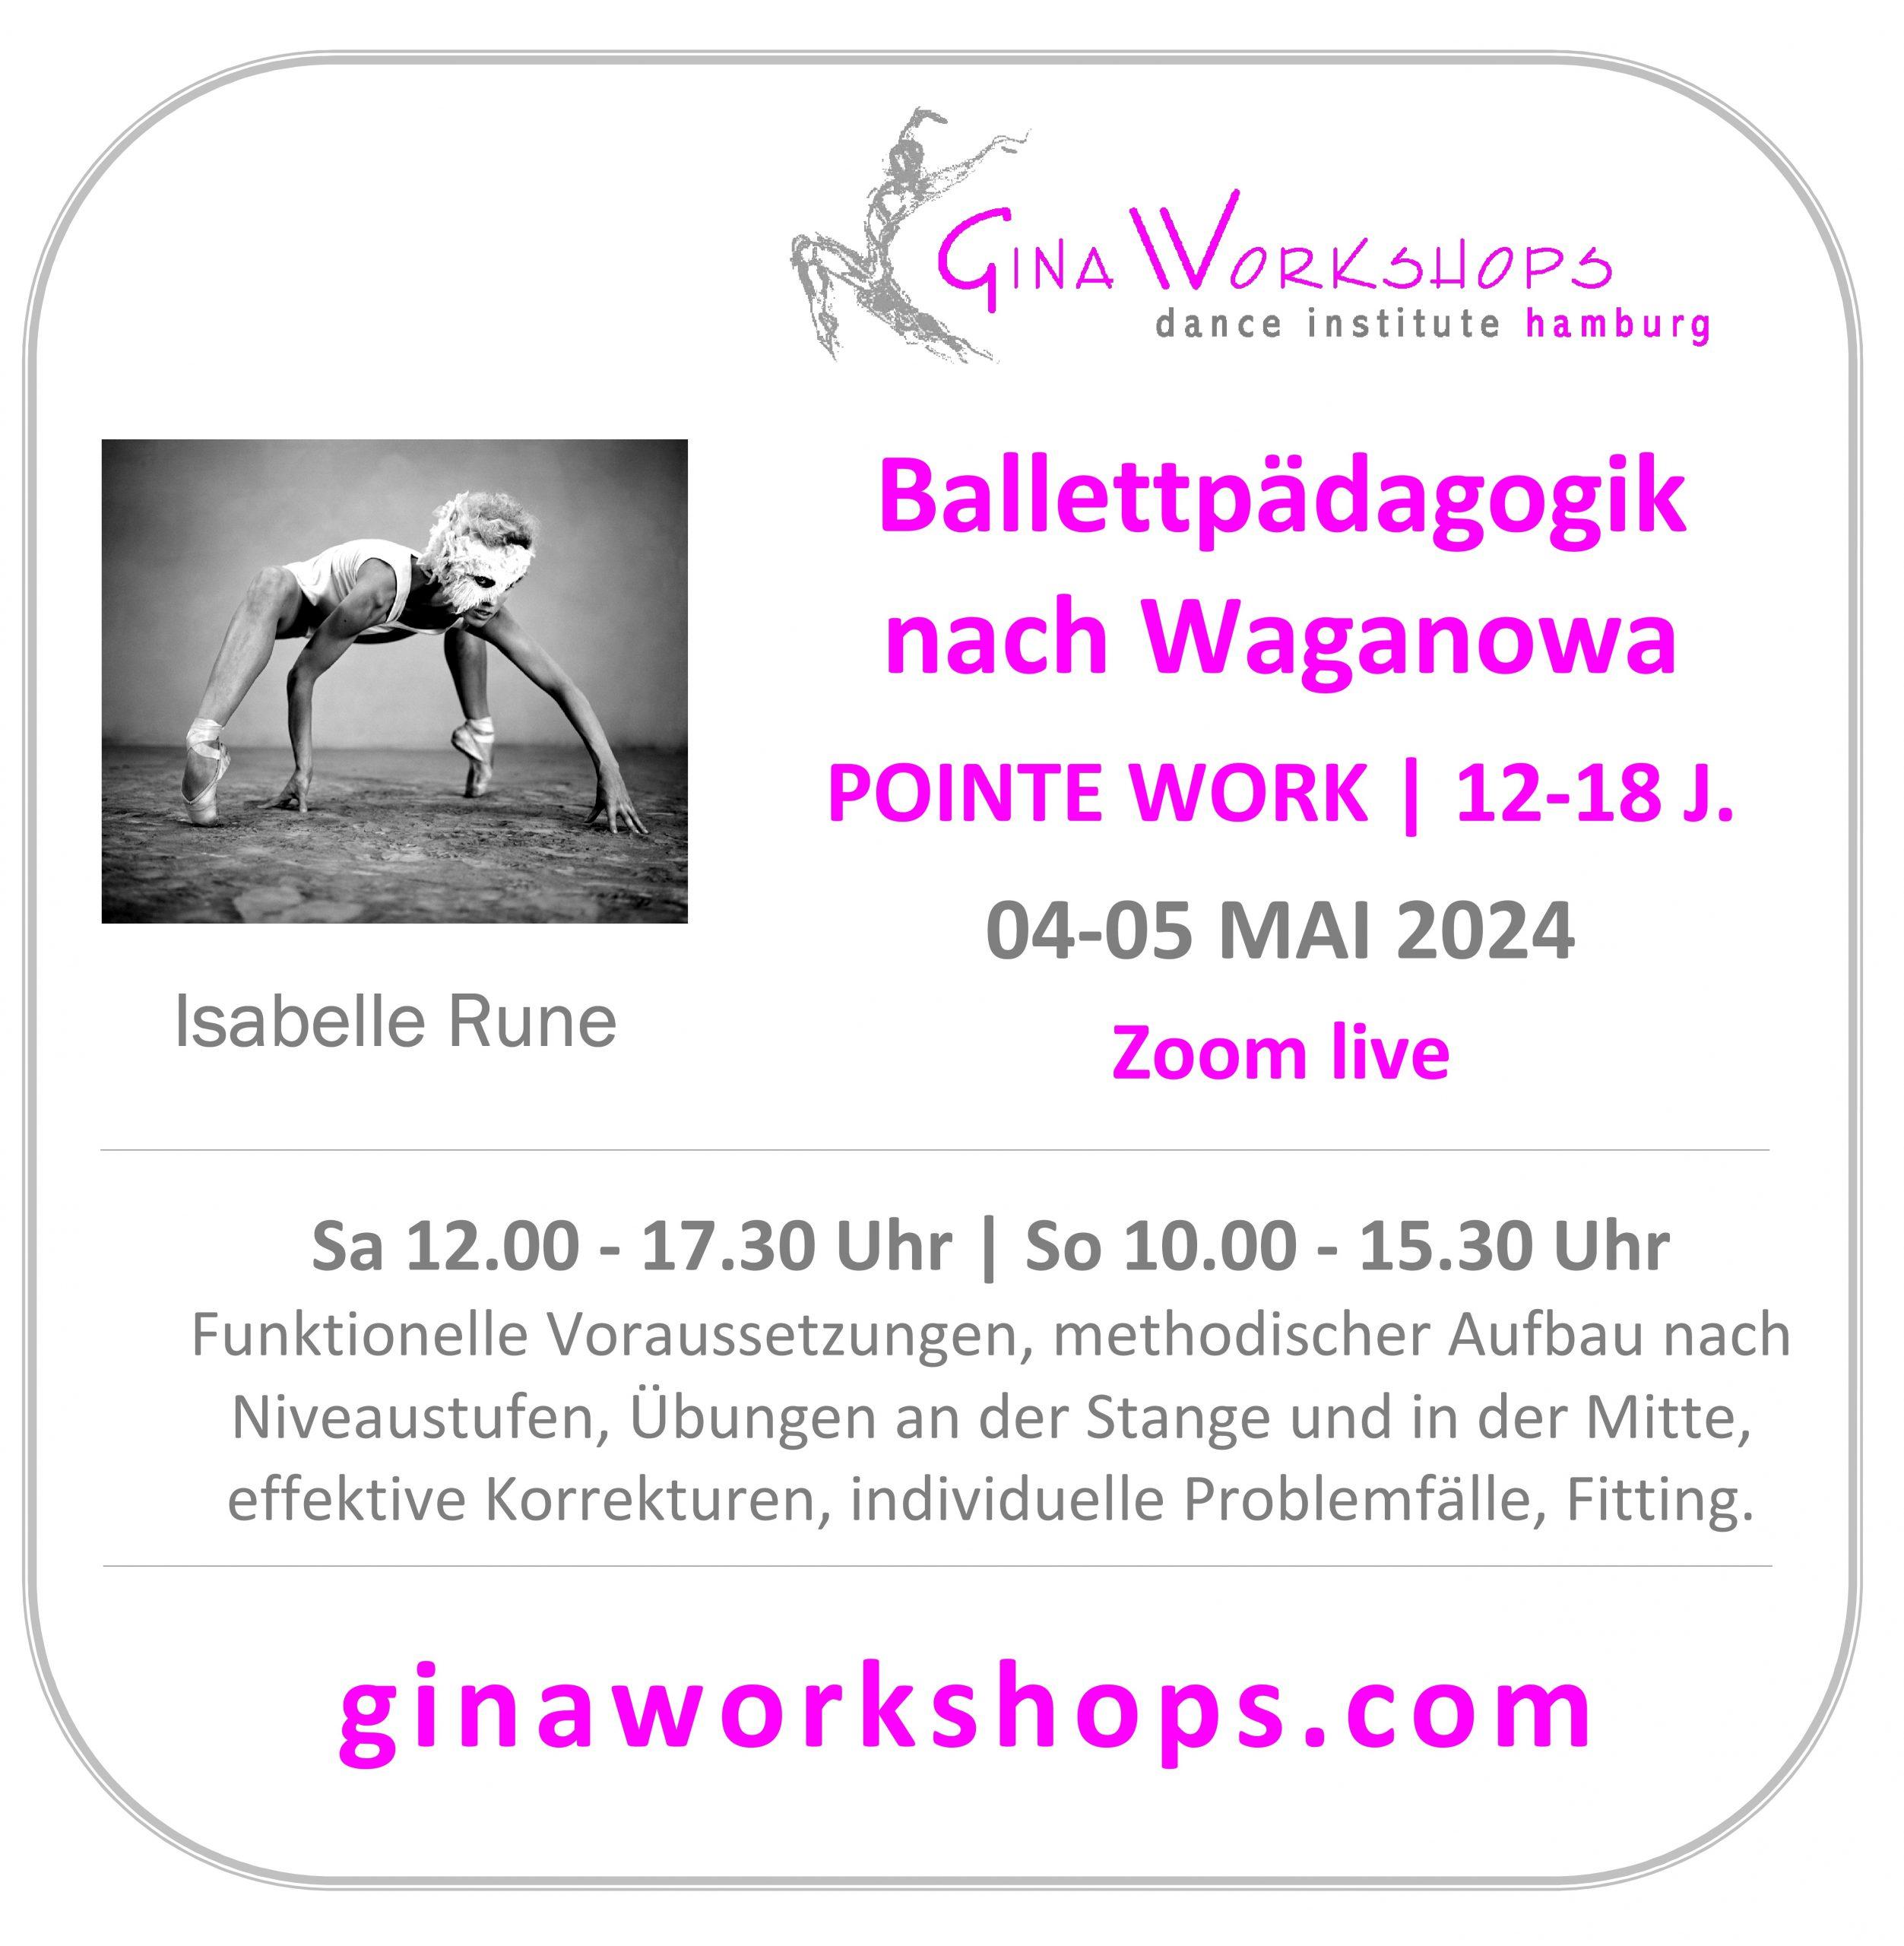 Ballettpädagogik: Pointe Work mit 12-18 J.